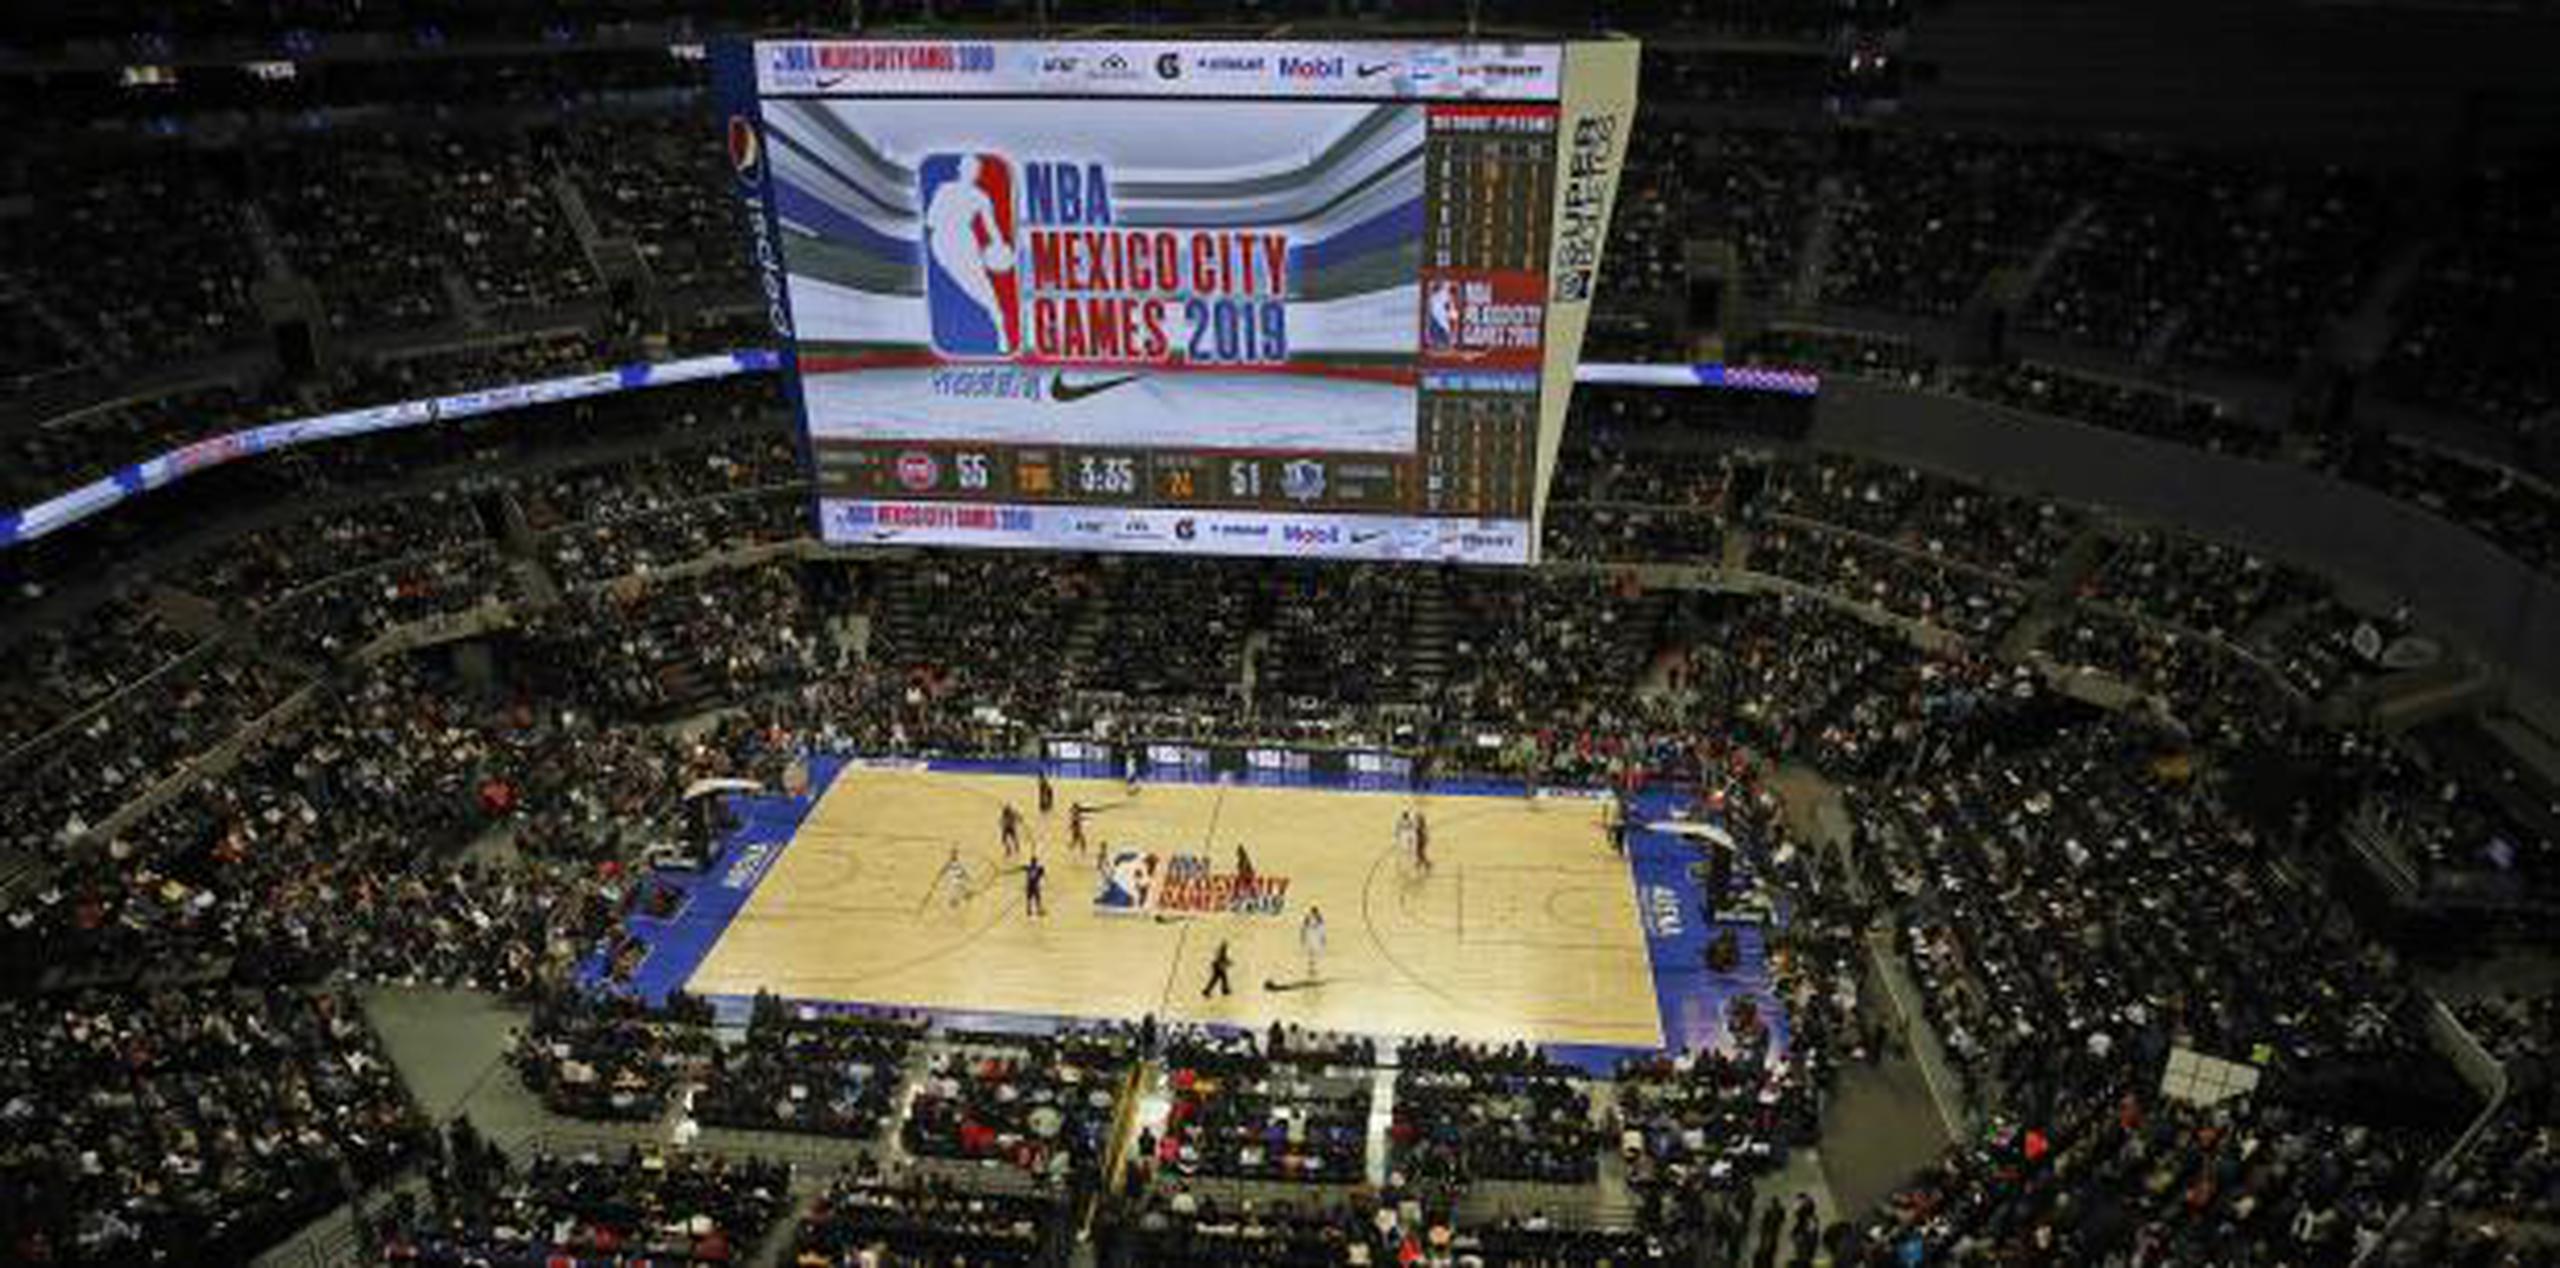 La NBA tiene una fuerte presencia en México. El jueves jugaron allí los Pistons de Detroit y los Mavericks de Dallas. 

